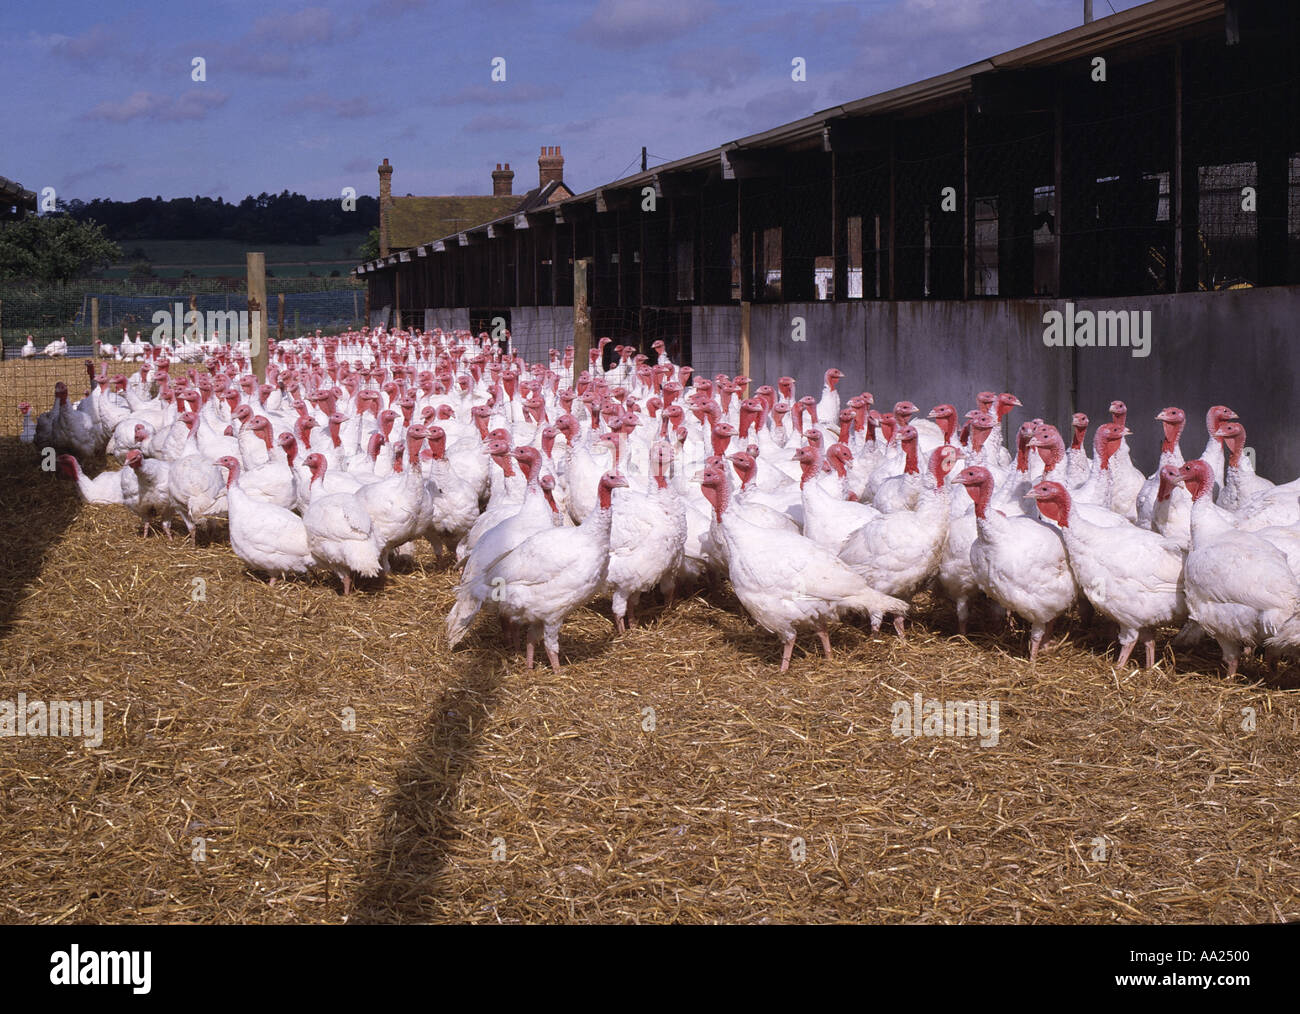 White turkeys in a pen Stock Photo